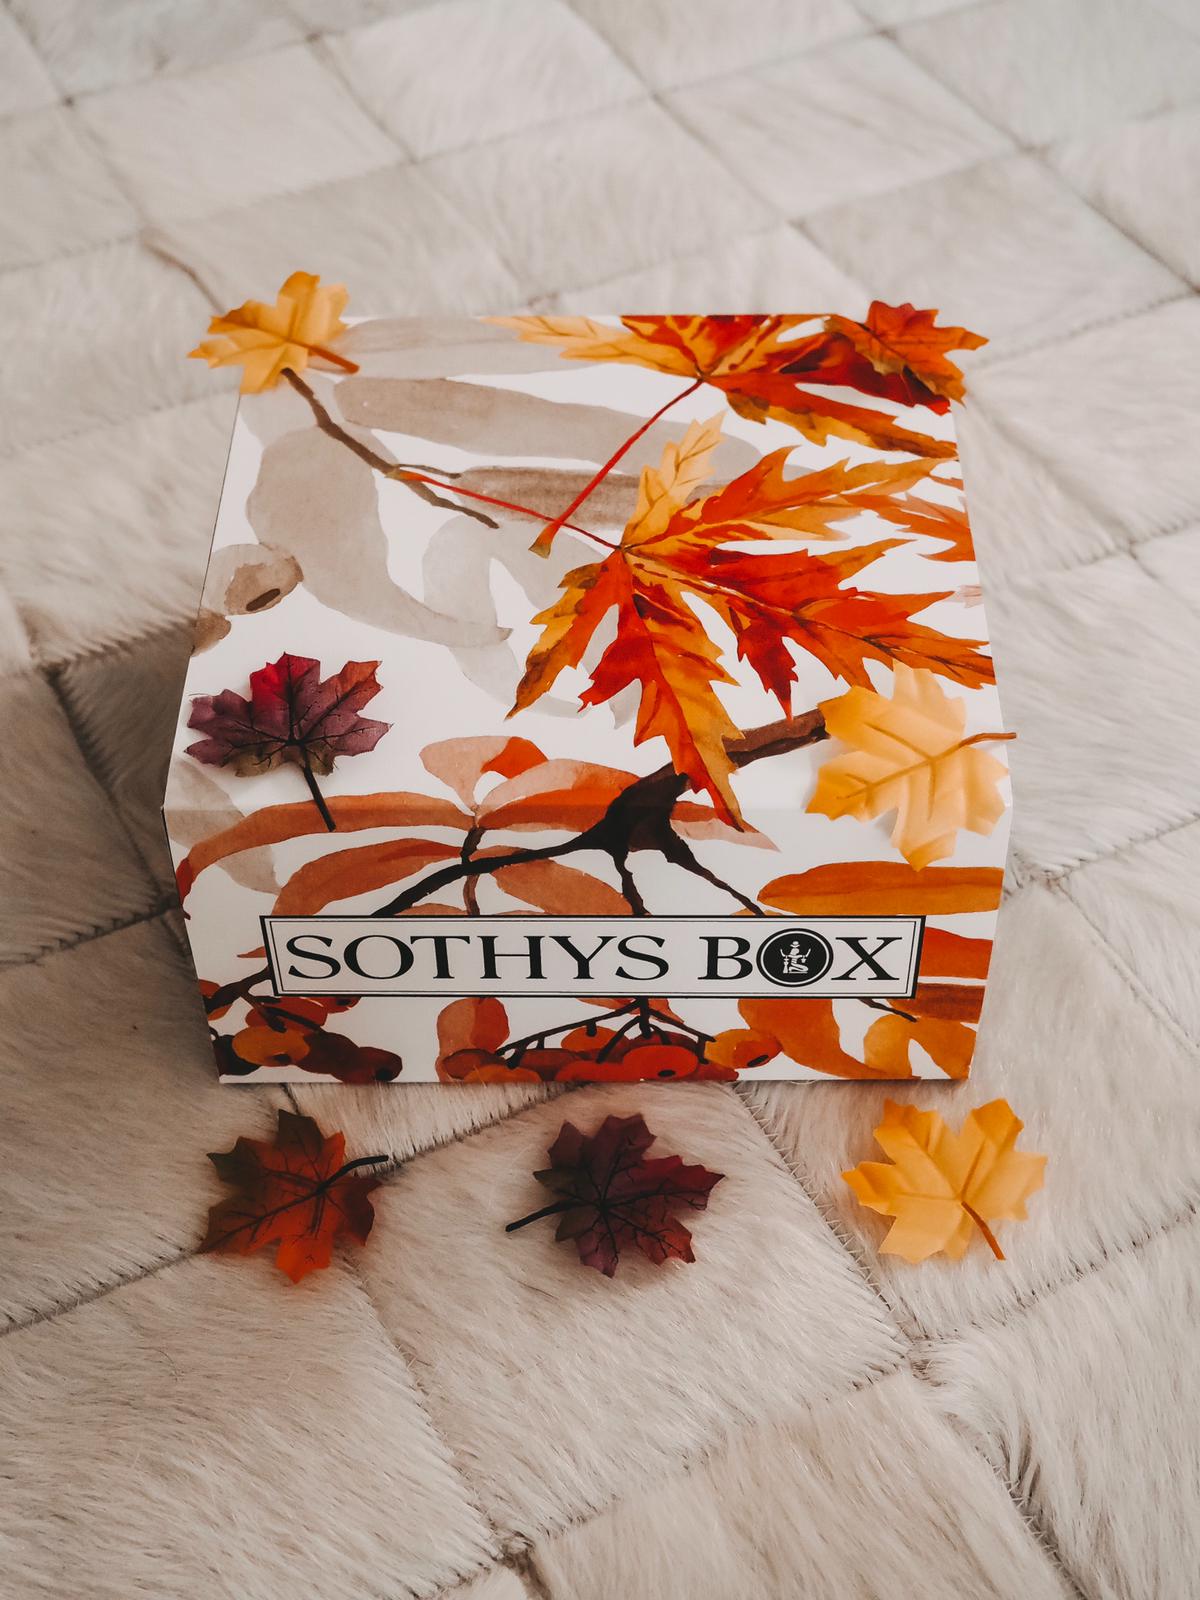 Heute zeige ich auf dem Blog die aktuelle Sothys Box Herbst Edition 2019 mit 7 top Produkten. Außerdem habe ich einen Rabattcode für euch mit satten 5 Euro.